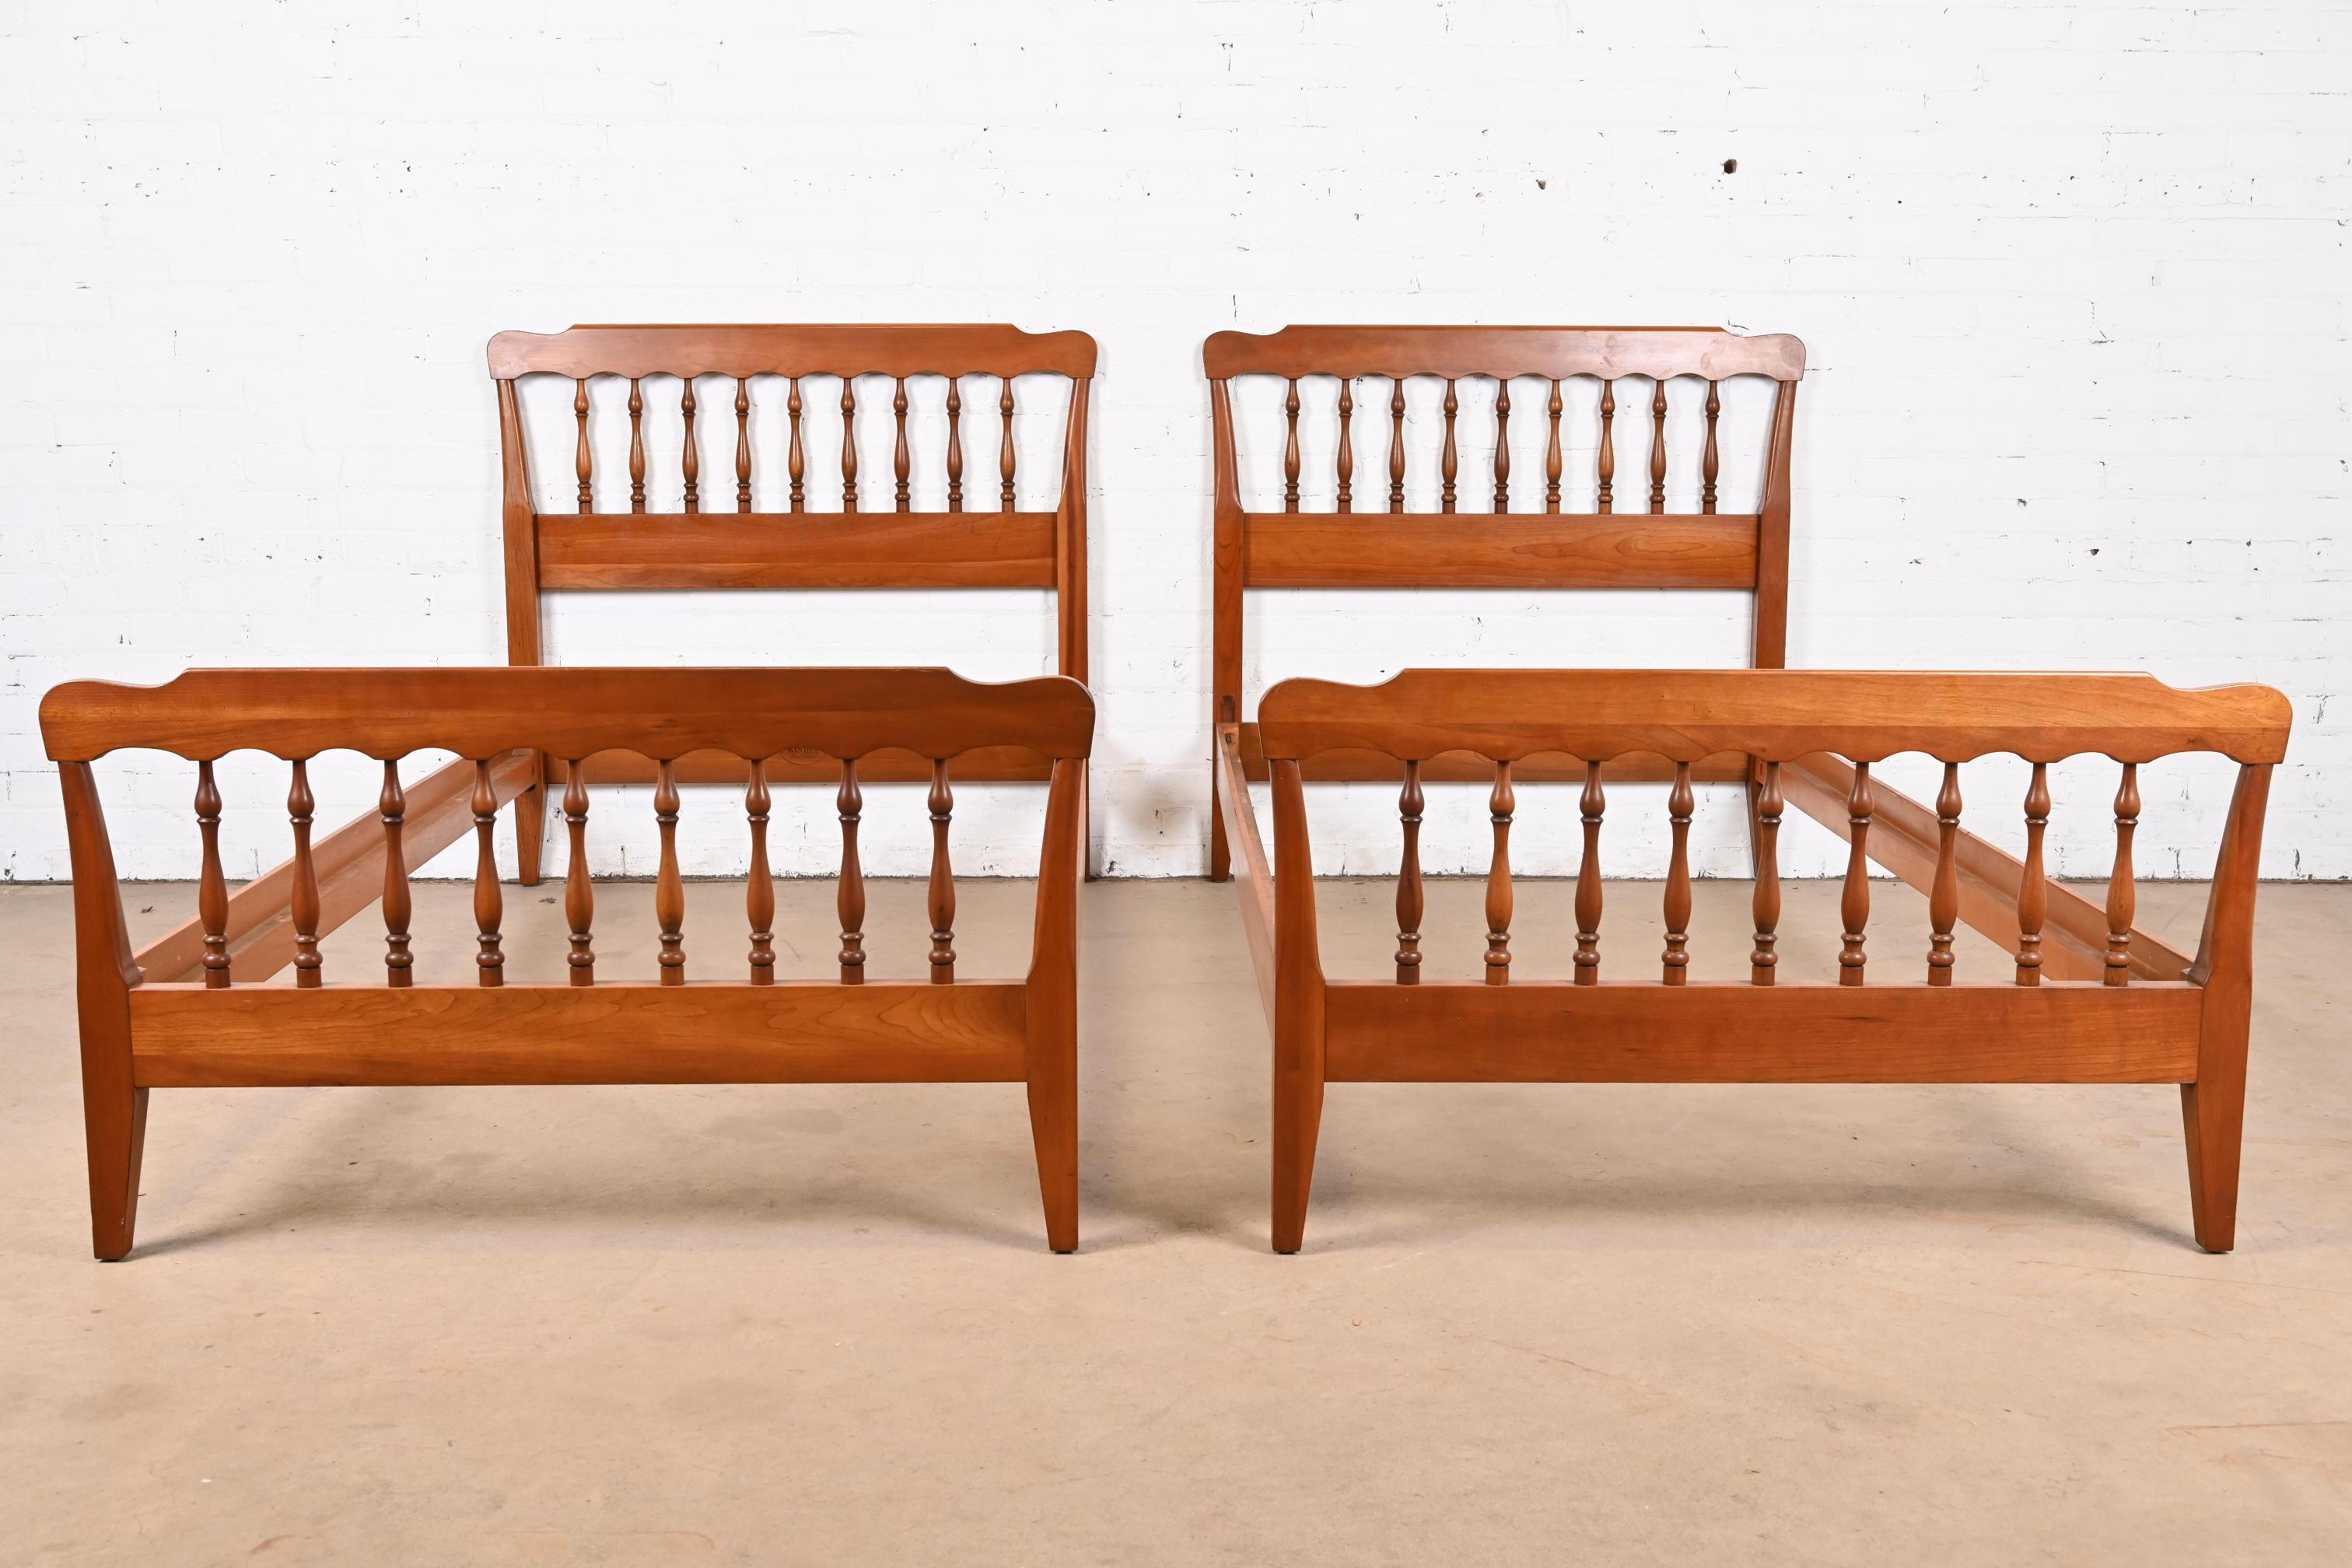 Kindel Furniture Amerikanische Kolonial geschnitzte Kirschbaumholz-Spindelbetten, Twin Size (Amerikanisch Kolonial) im Angebot